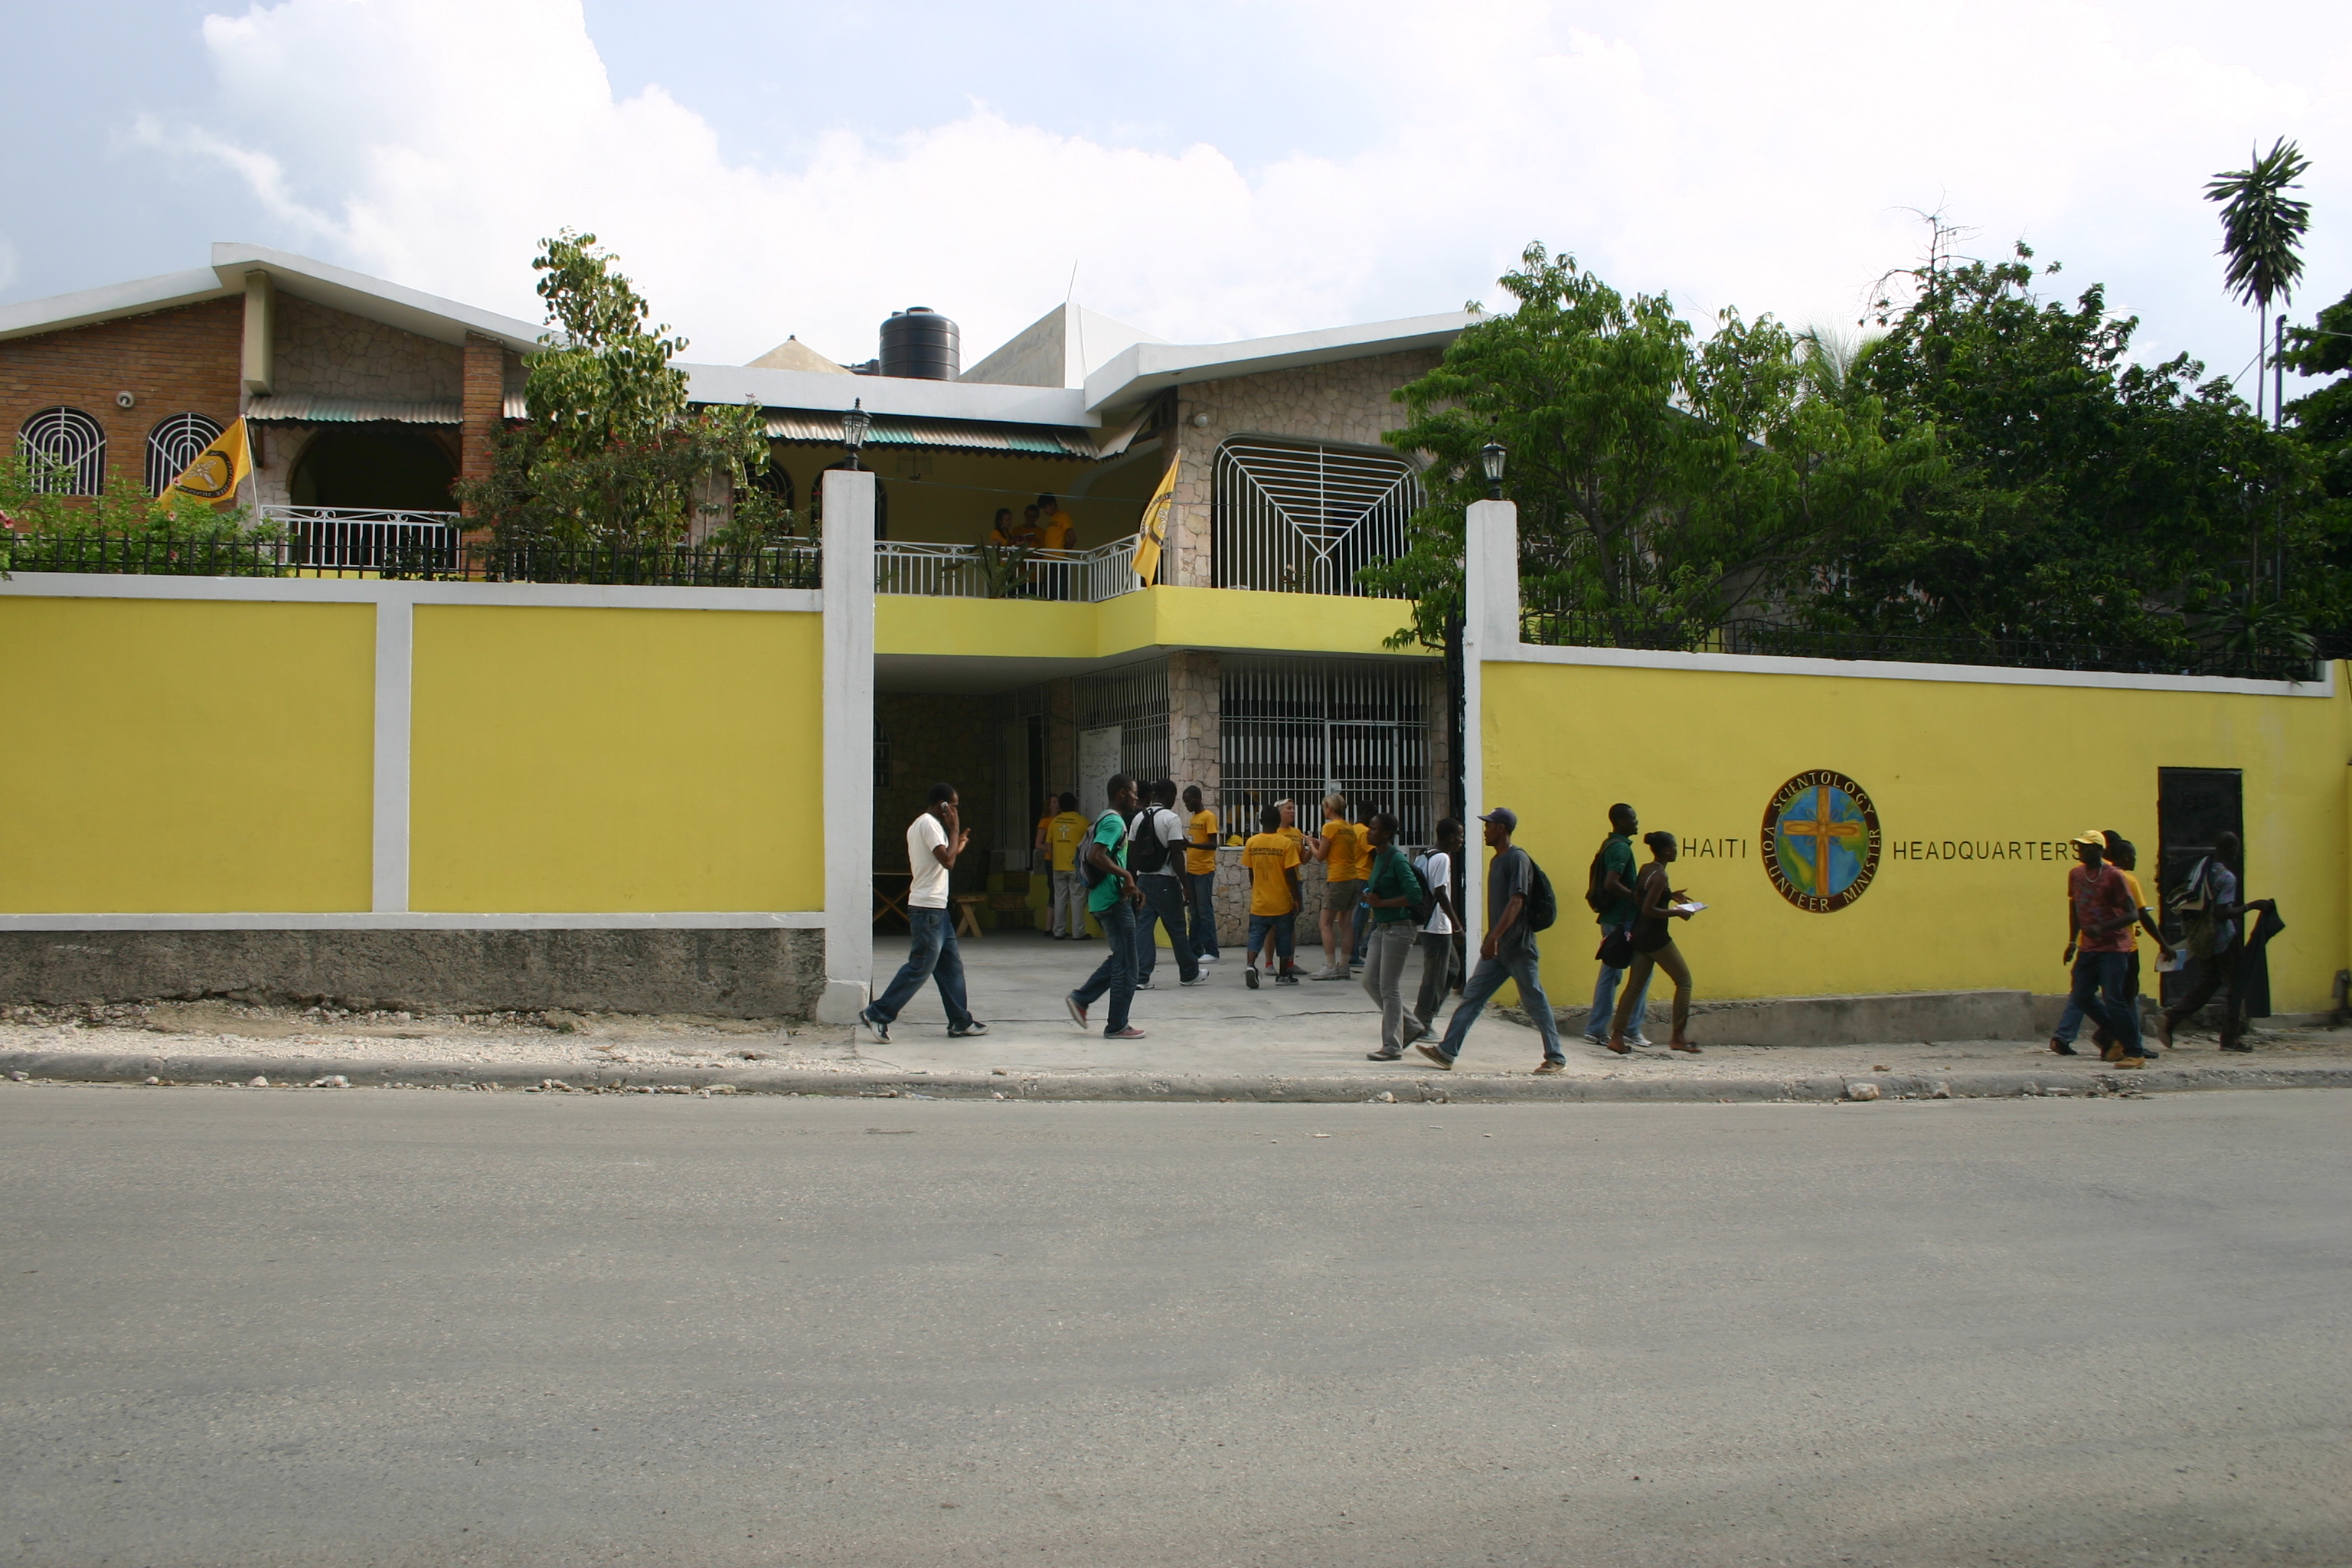 Le nouveau bâtiment de 3 étages des ministres volontaires à Haïti permet d’apporter  une aide efficace à la population haïtienne en toute sécurité.